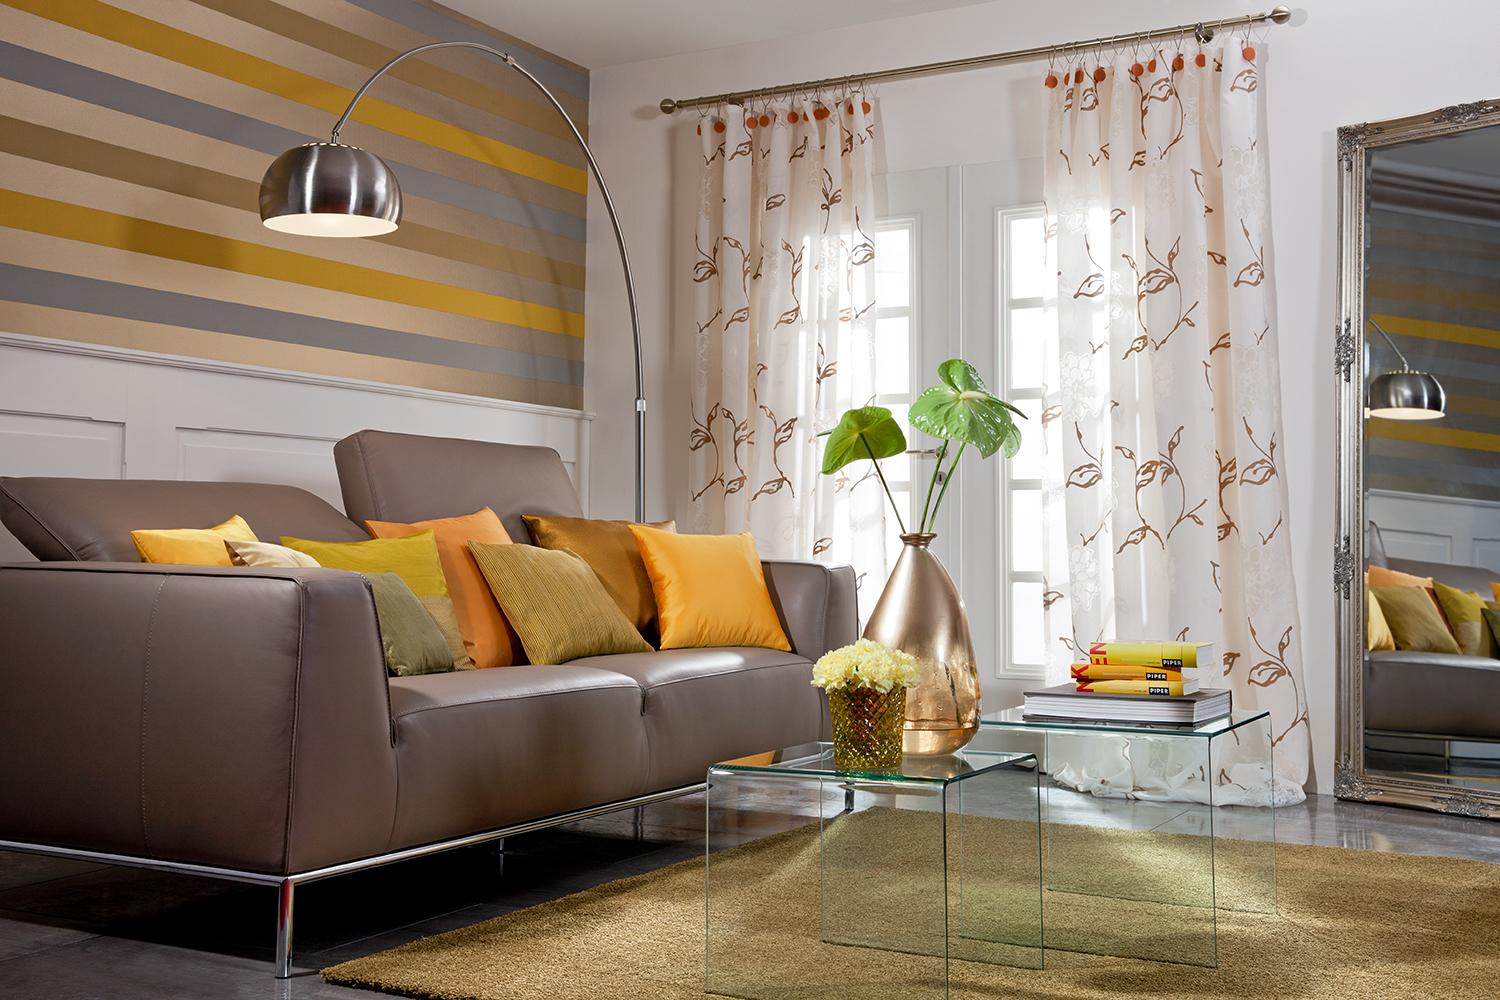 Color Blocking im Wohnzimmer #beistelltisch #teppich #wandgestaltung #sofa #braunessofa #kupfervase #wohnzimmerdeko ©SÜDBUND eG